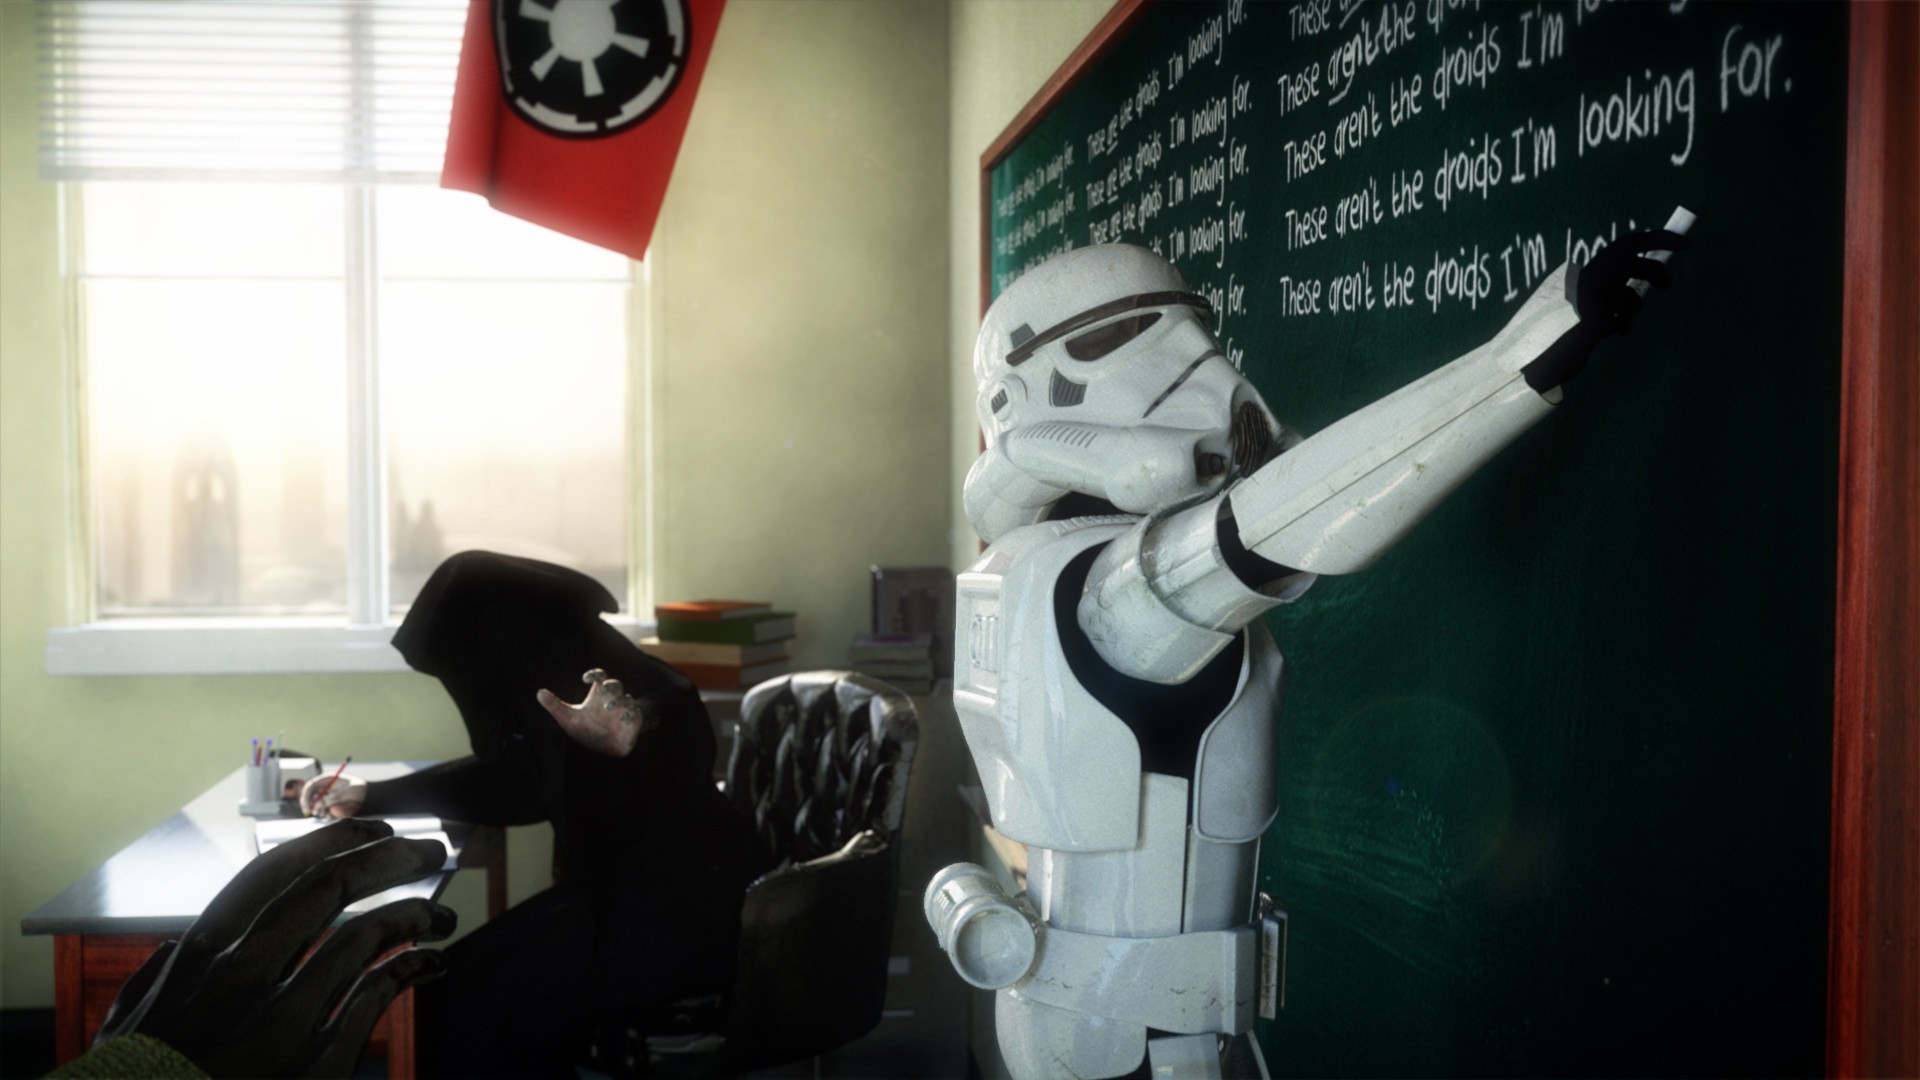 humor, star wars, school, stormtrooper Desktop home screen Wallpaper